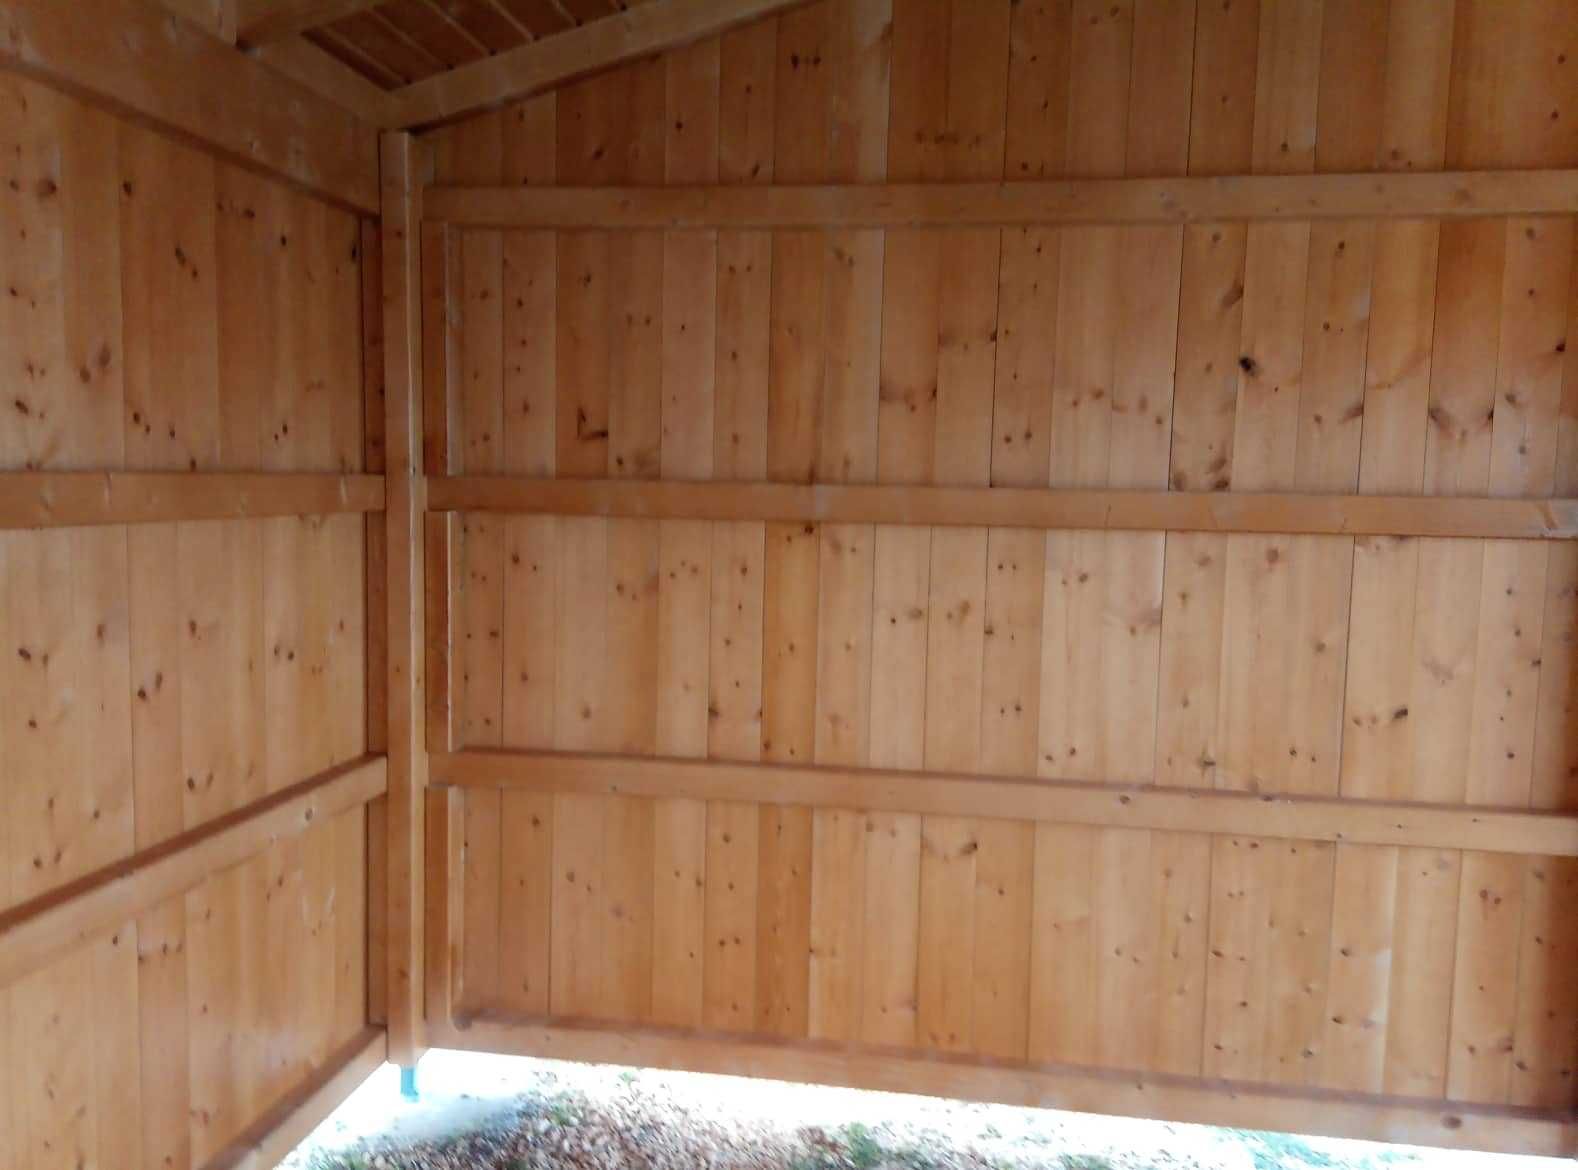 garagem / telheiro em madeira - Madeira&Conforto